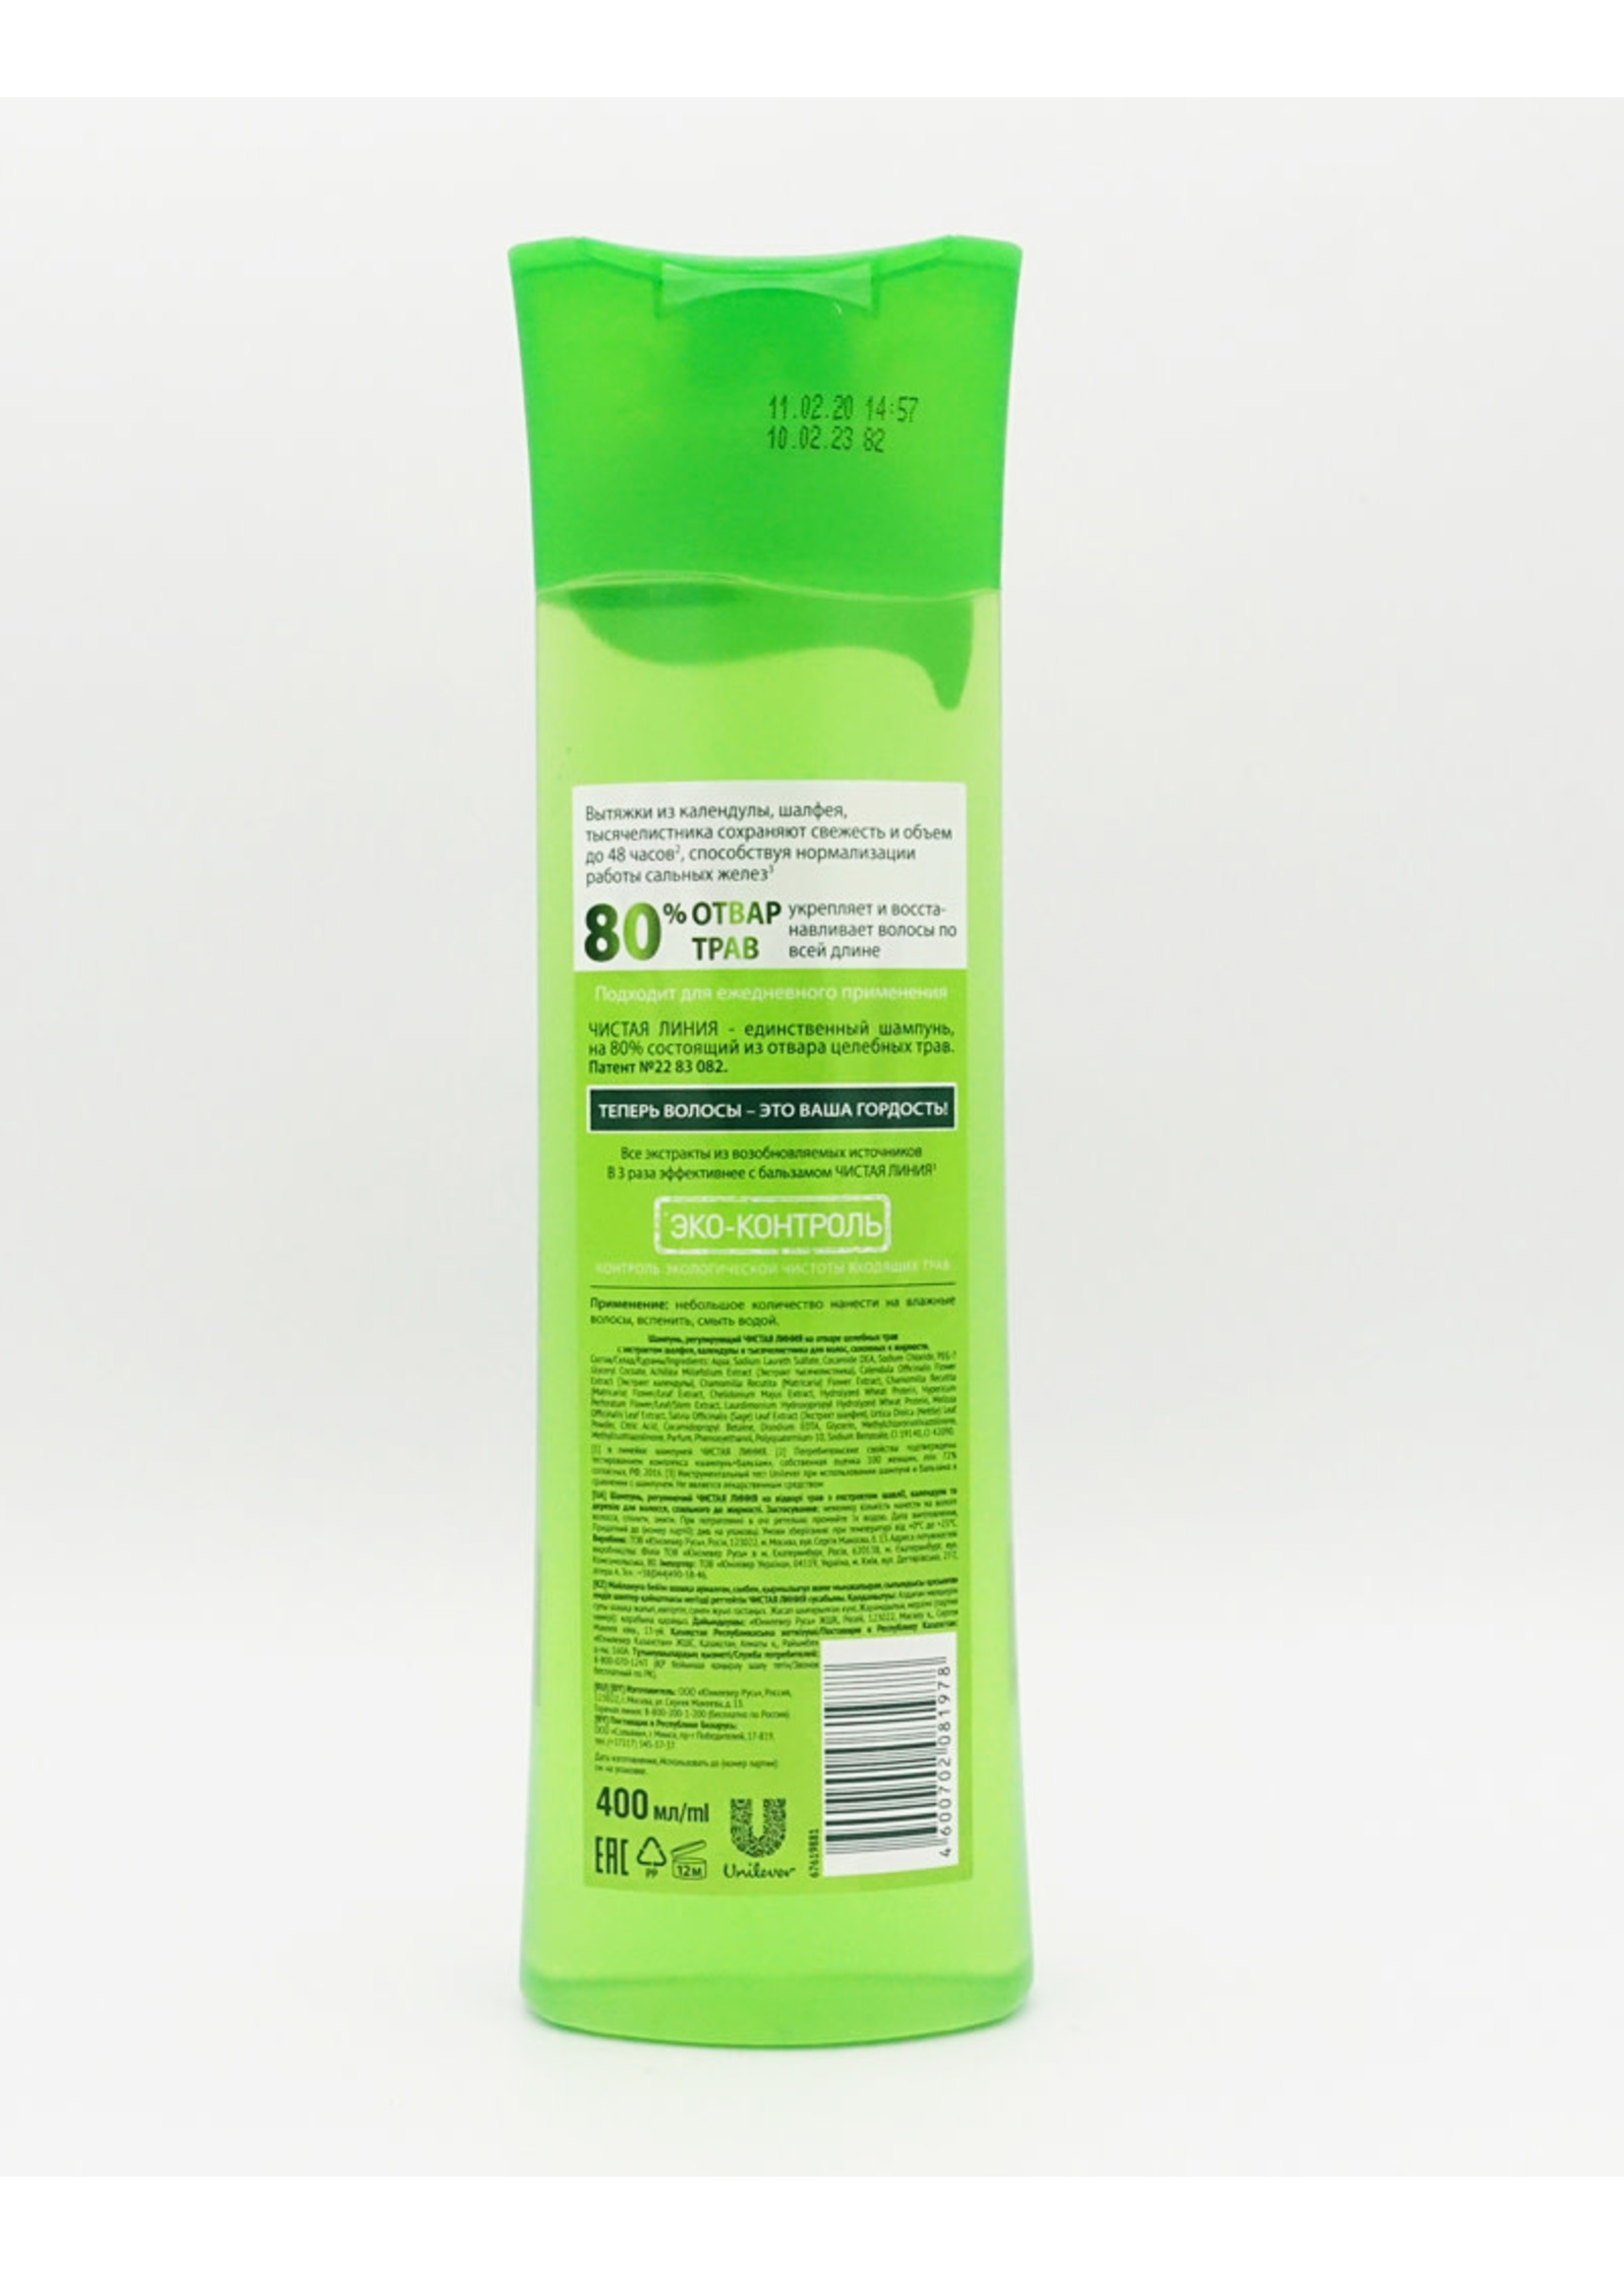 Чистая Линия Pure Line Shampoo Regulating Calendula 400ml